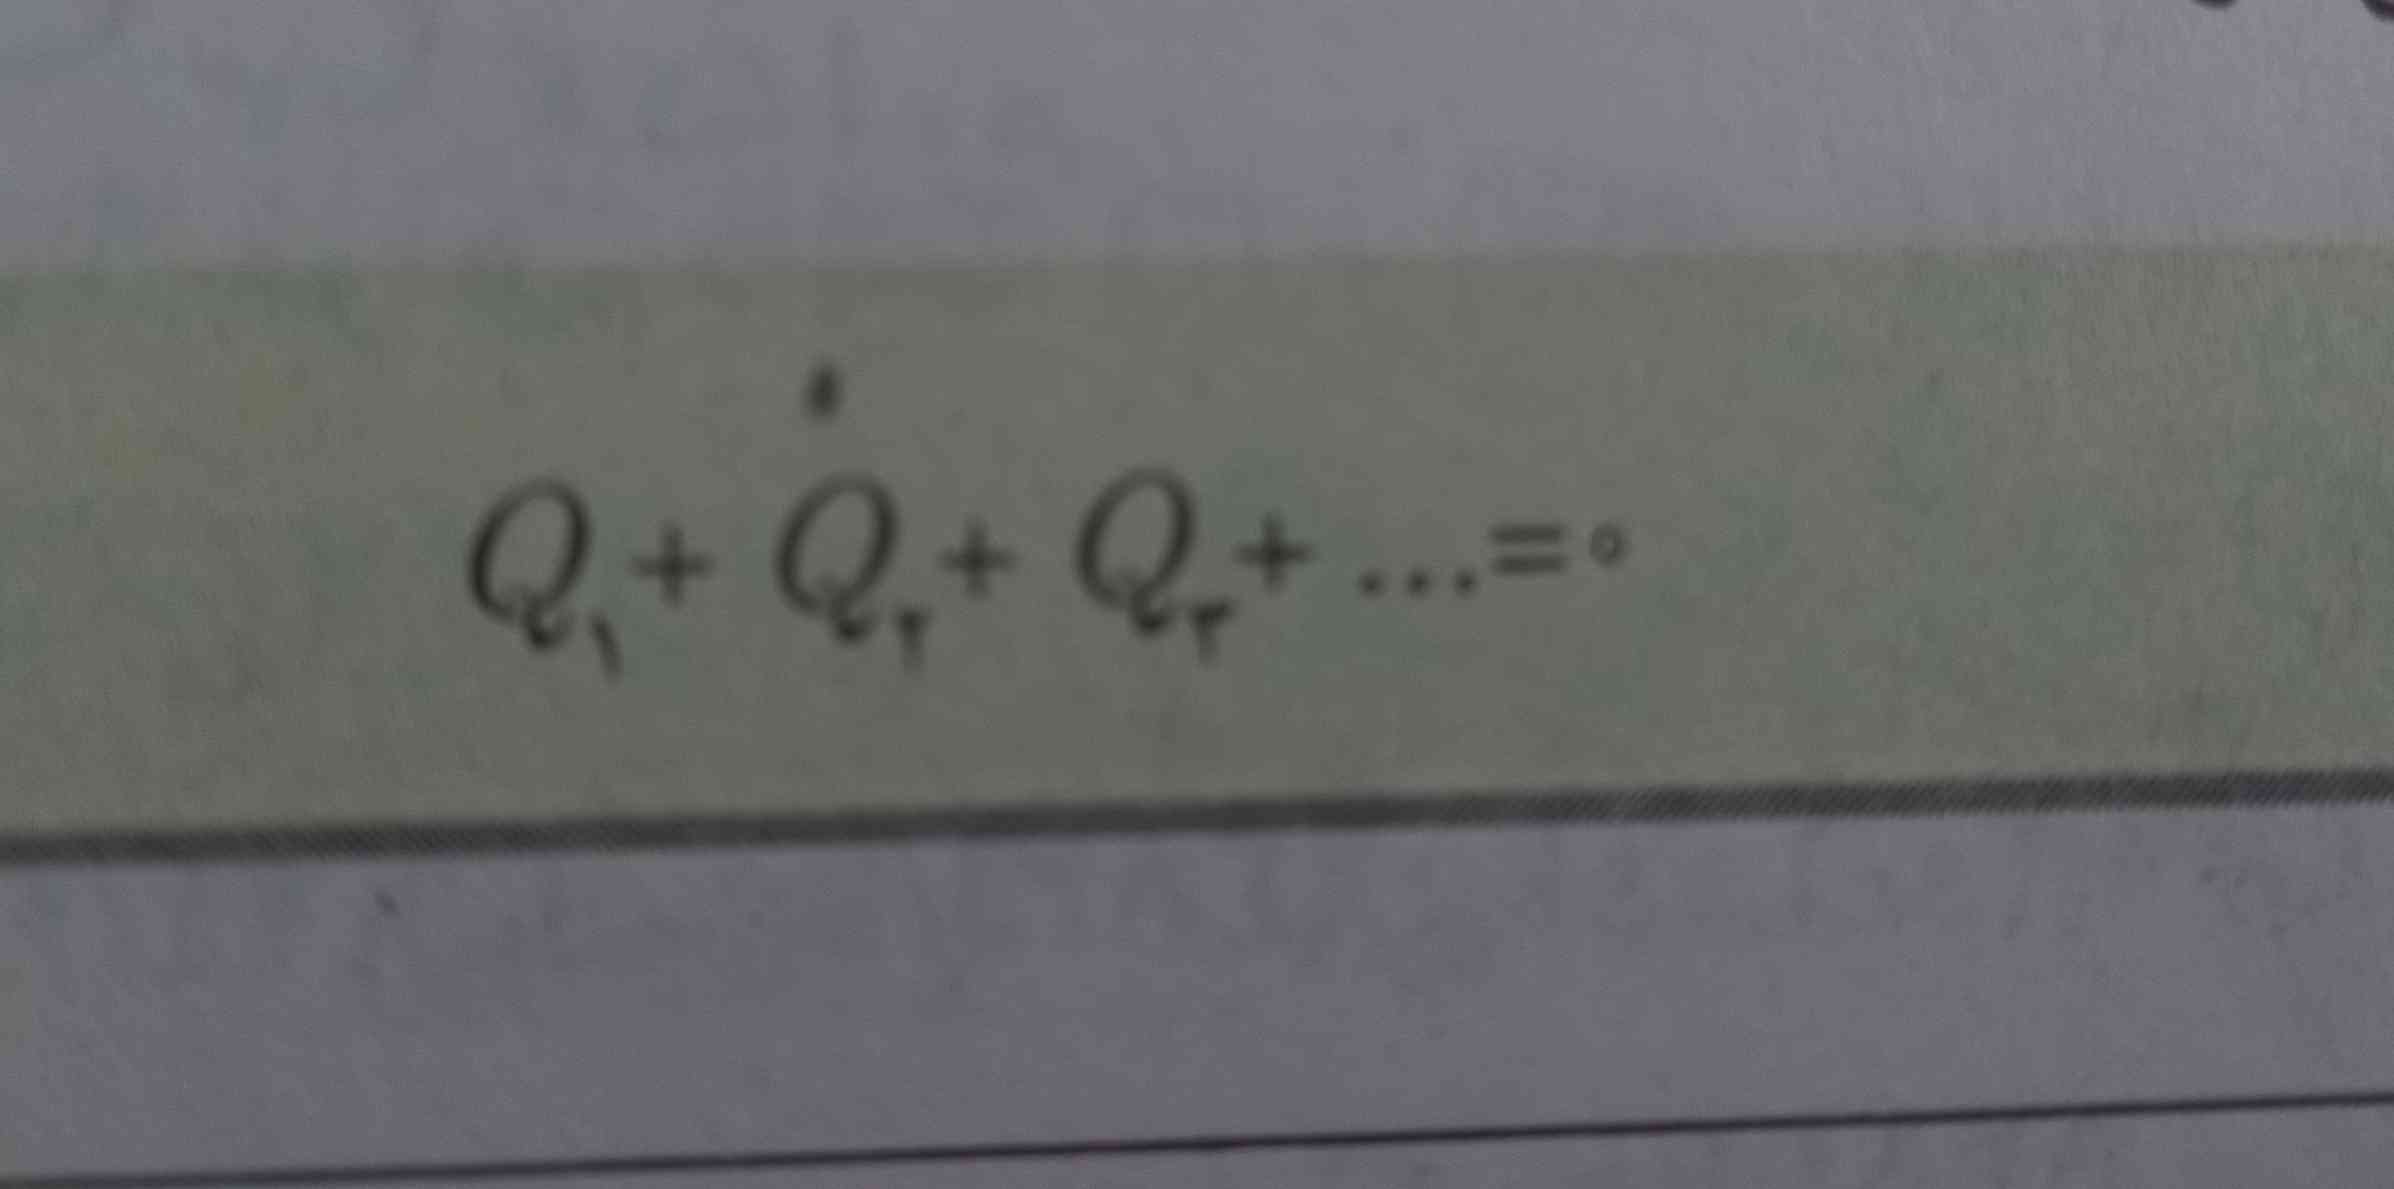 بچه ها این فرموله مشکلم اینه ک چ موقع ازش باید استفاده کنم سوالش معمولا این درنمیاد ک بگ دمای تعادل را بدست اورید؟؟ جواب میدین لطفا